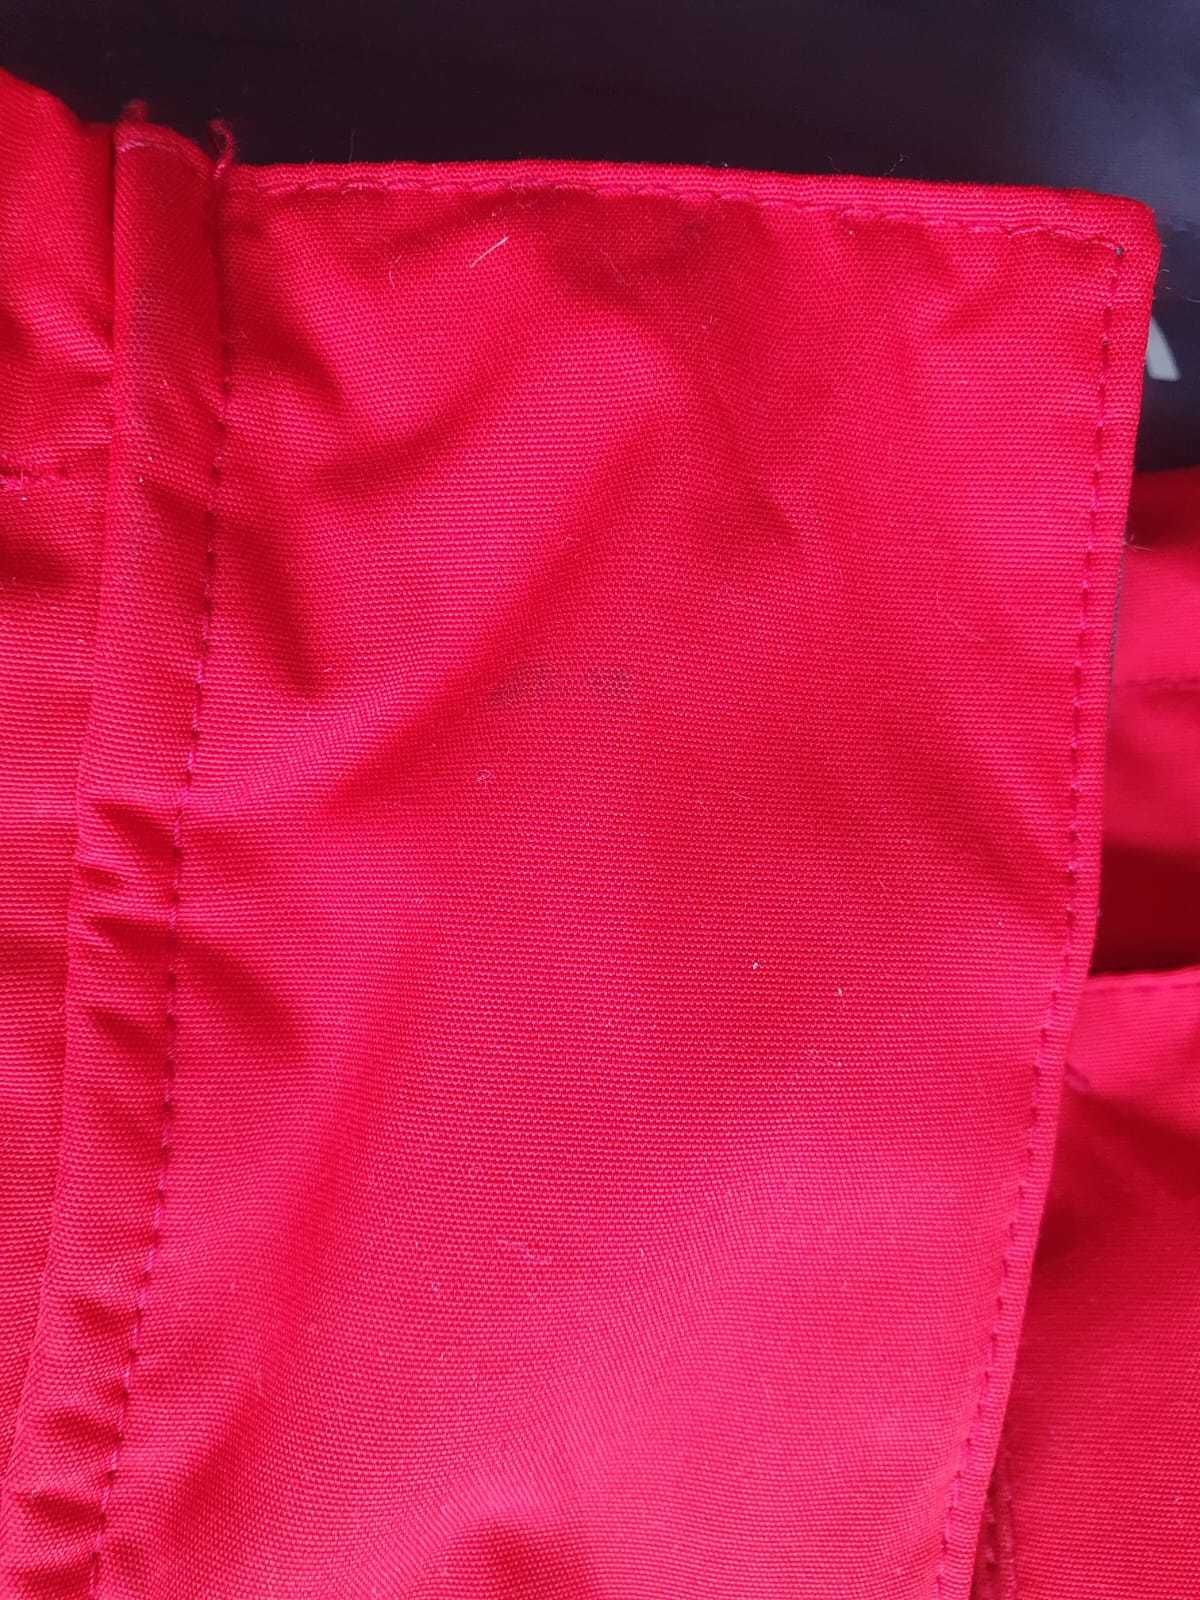 Musto czerwony sztormiak kurtka żeglarska z odblaskami BR1 rozm S